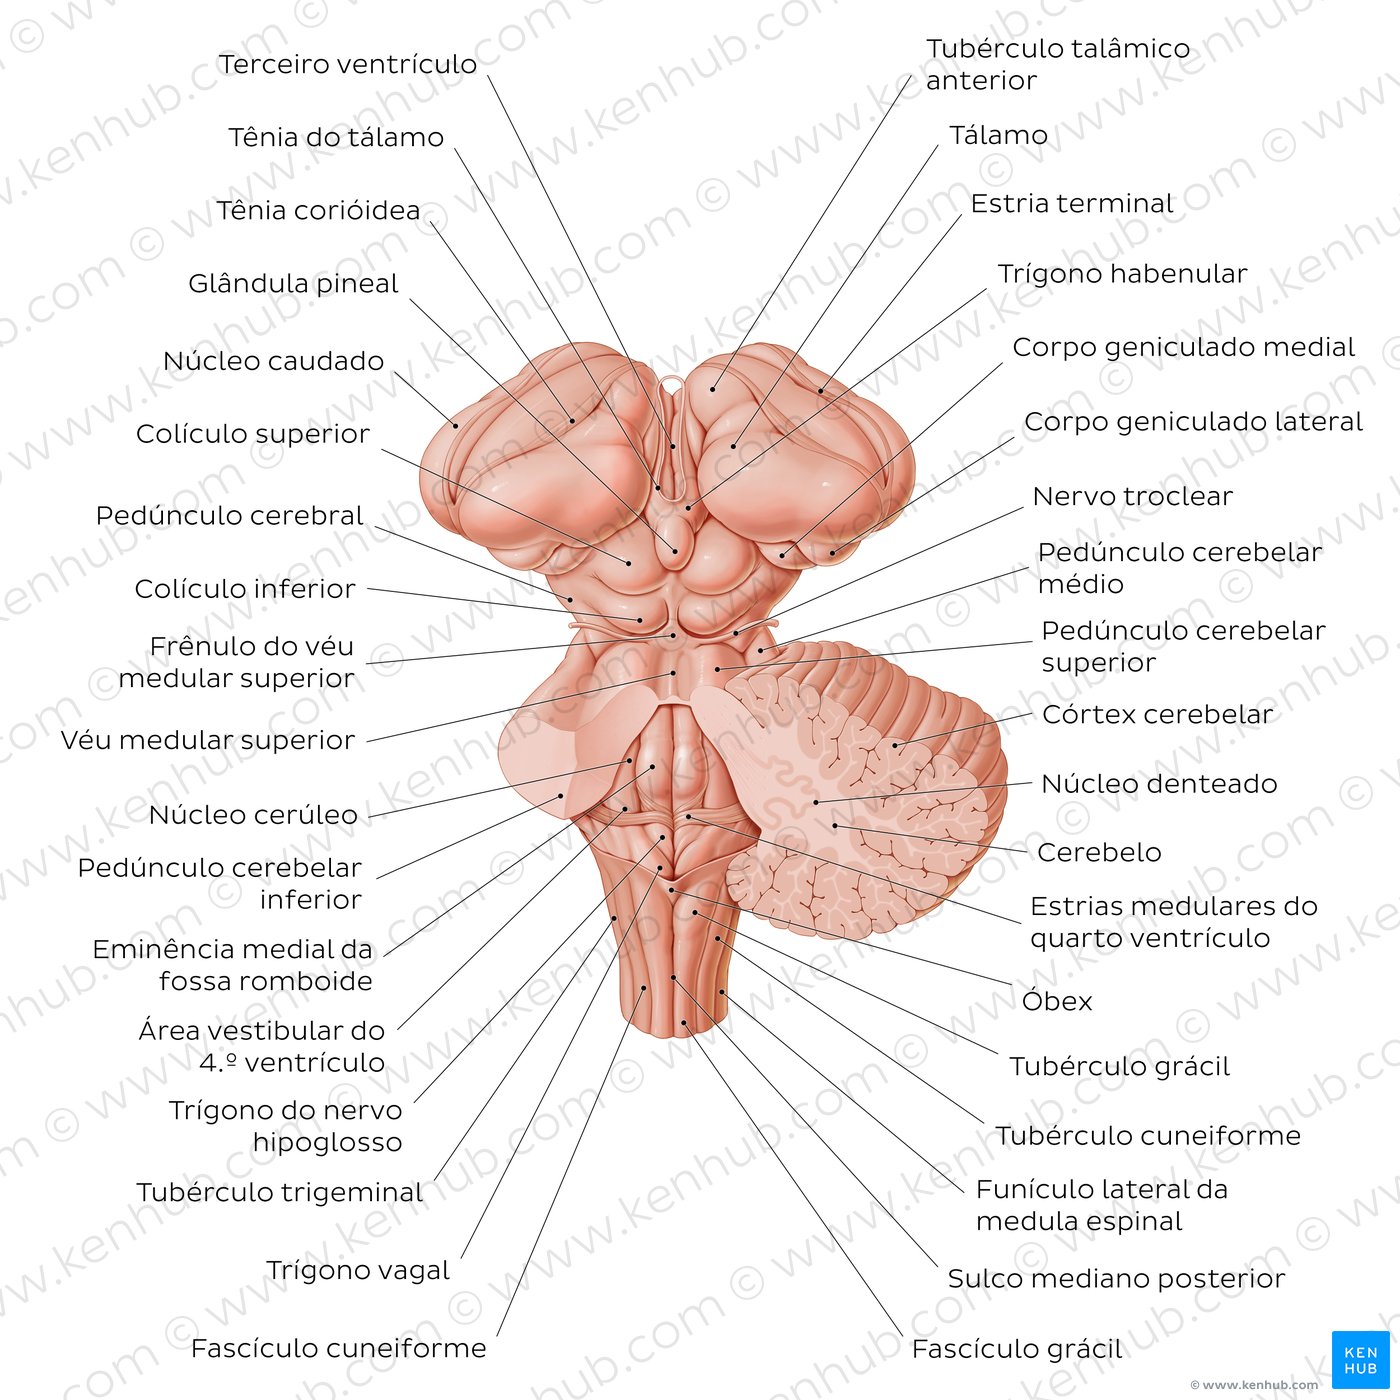 Anatomia do tronco cerebral e estruturas relacionadas - vista posterior